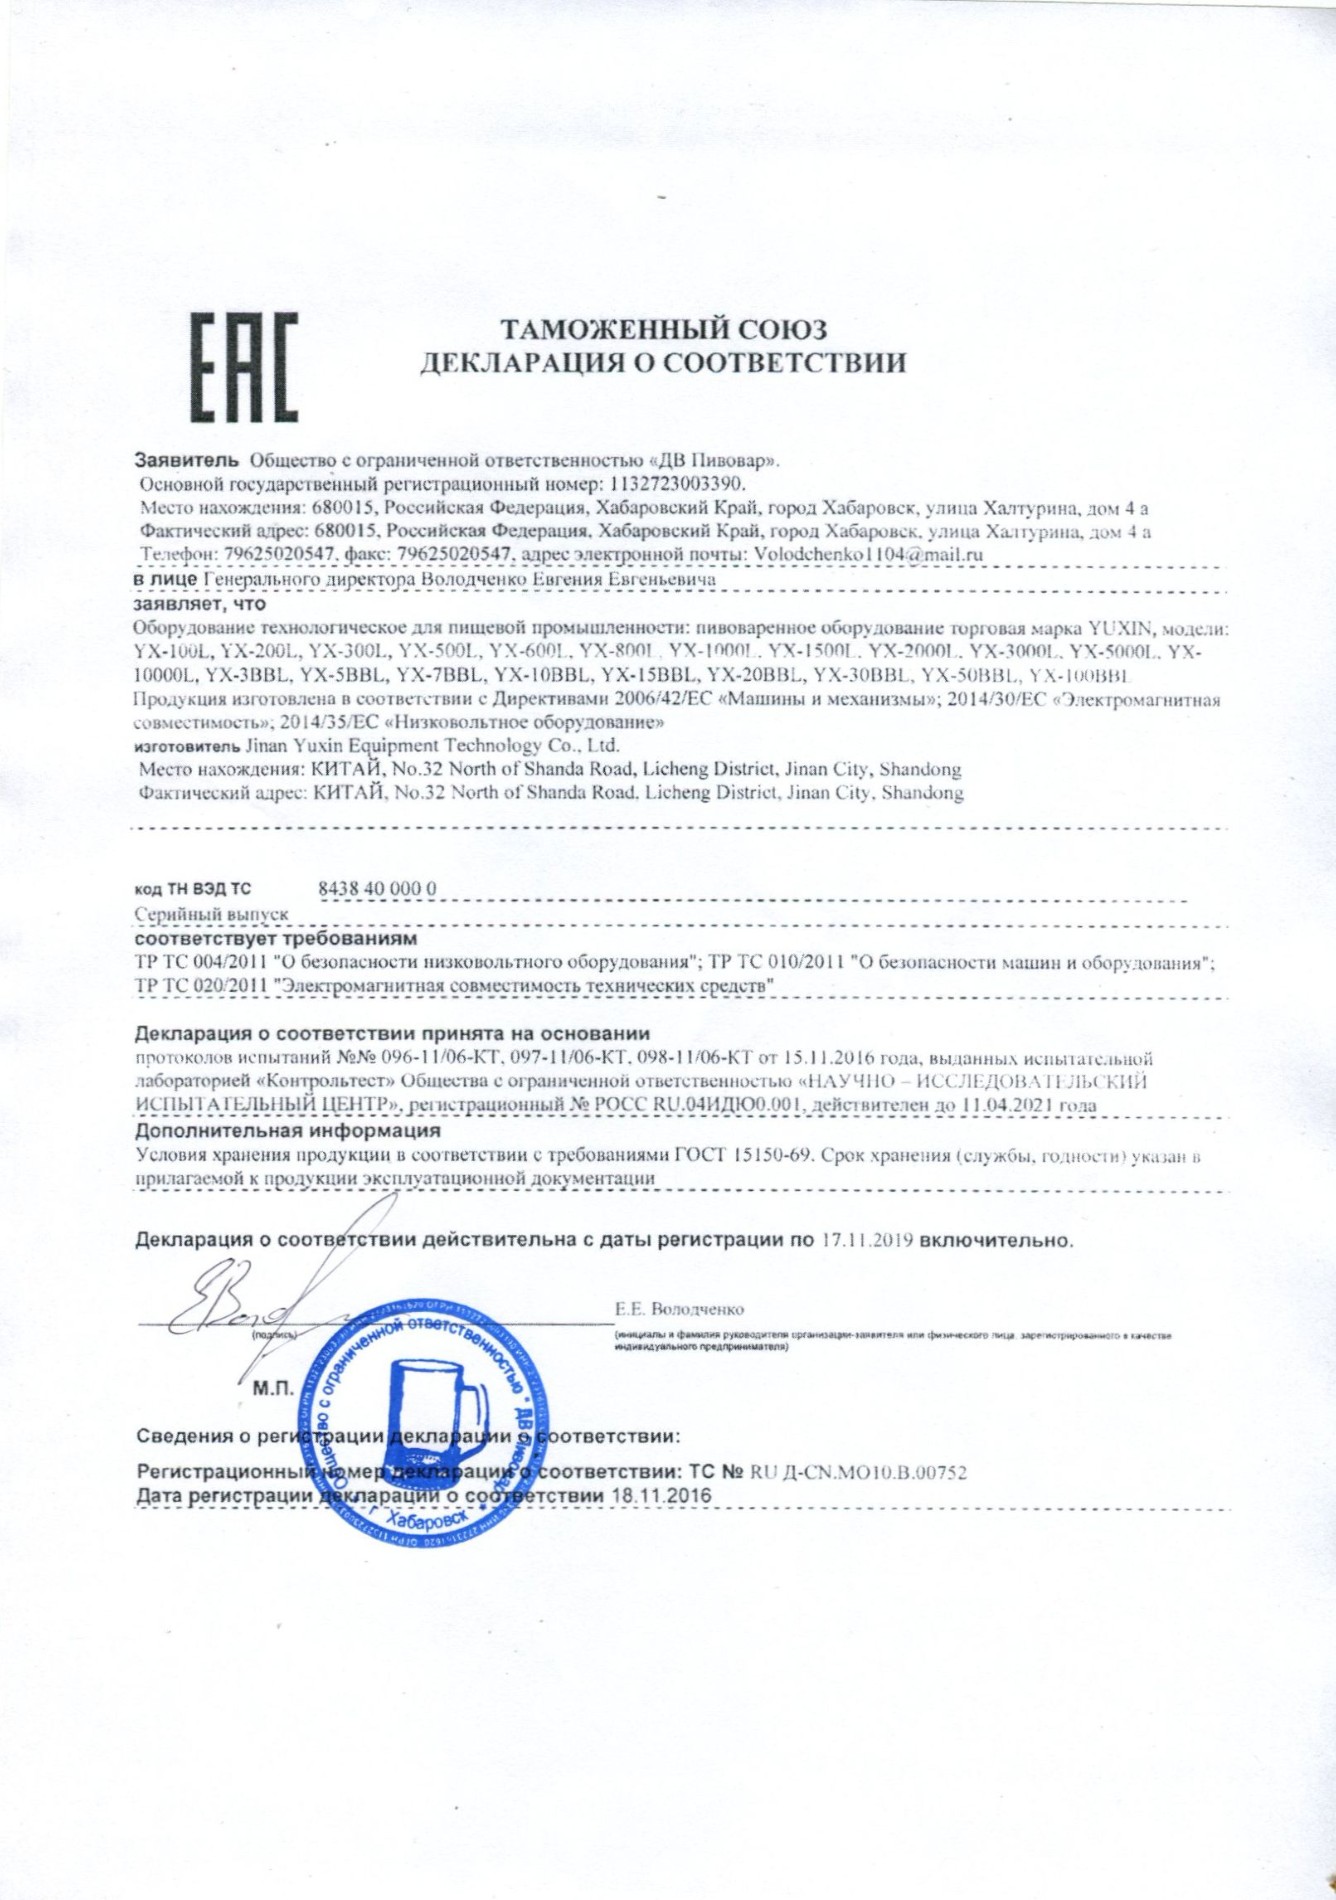 EAC-sertifikat